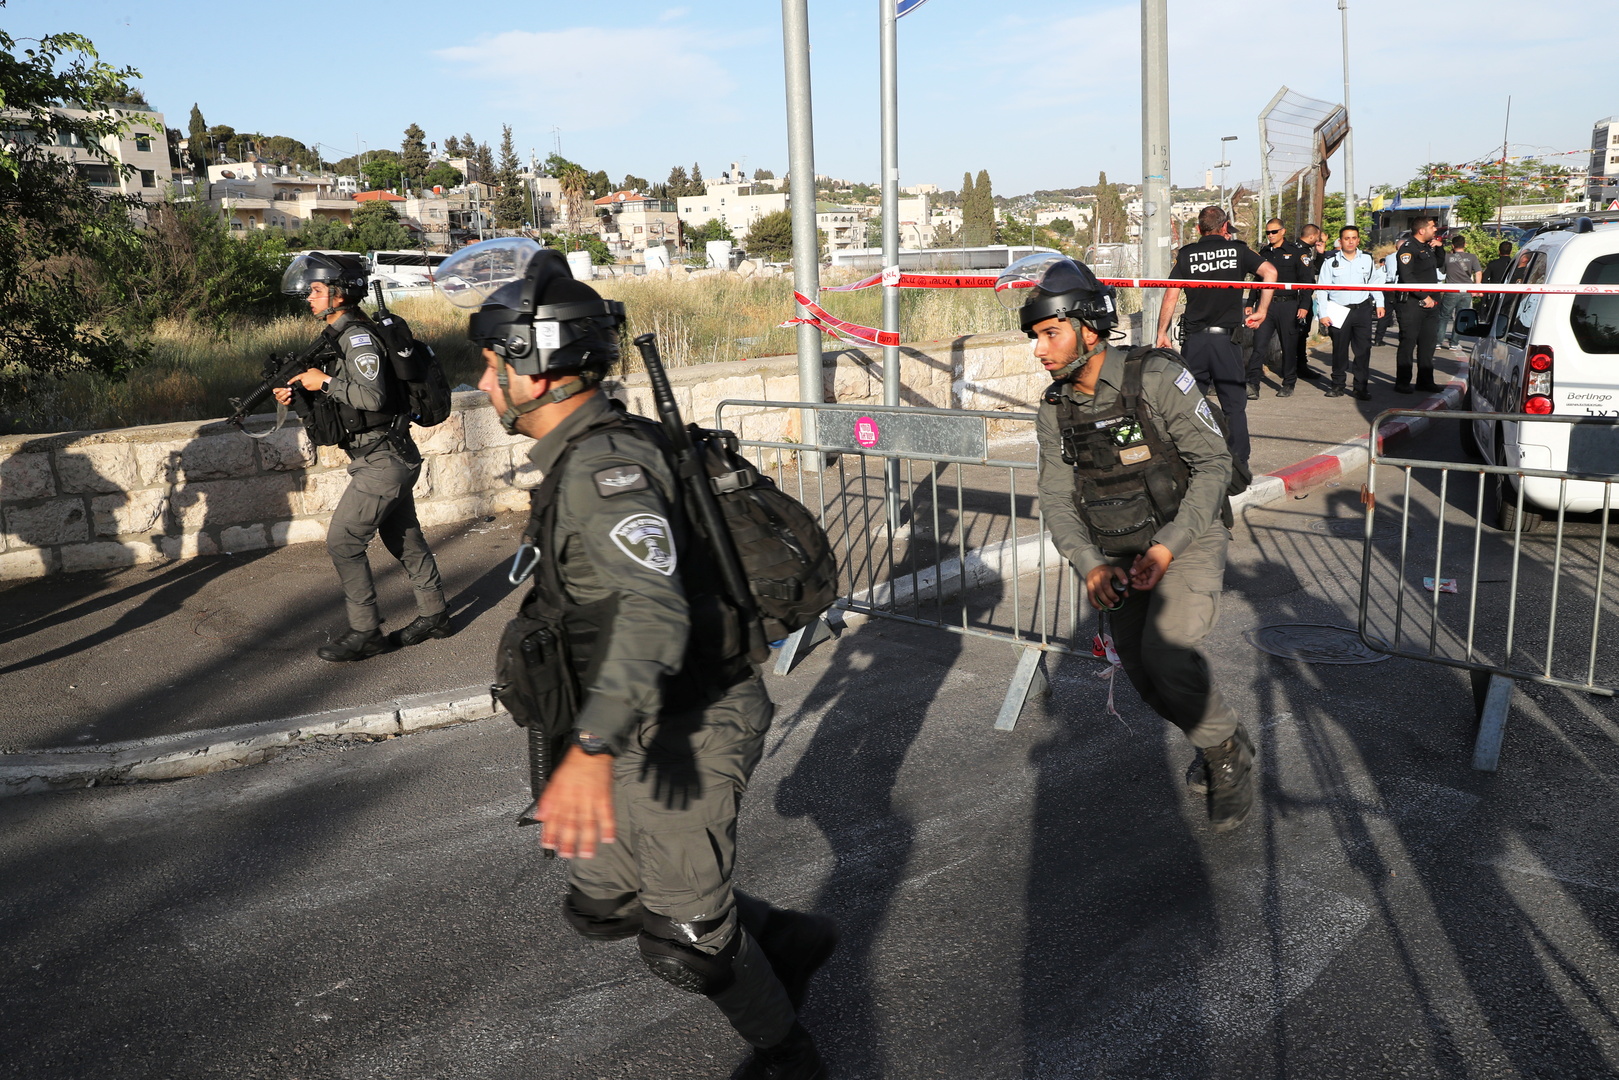 القوات الإسرائيلية تعتدي بالضرب على شبان فلسطينيين بساحة باب العامود وتخليها قبيل بدء مسيرة الأعلام